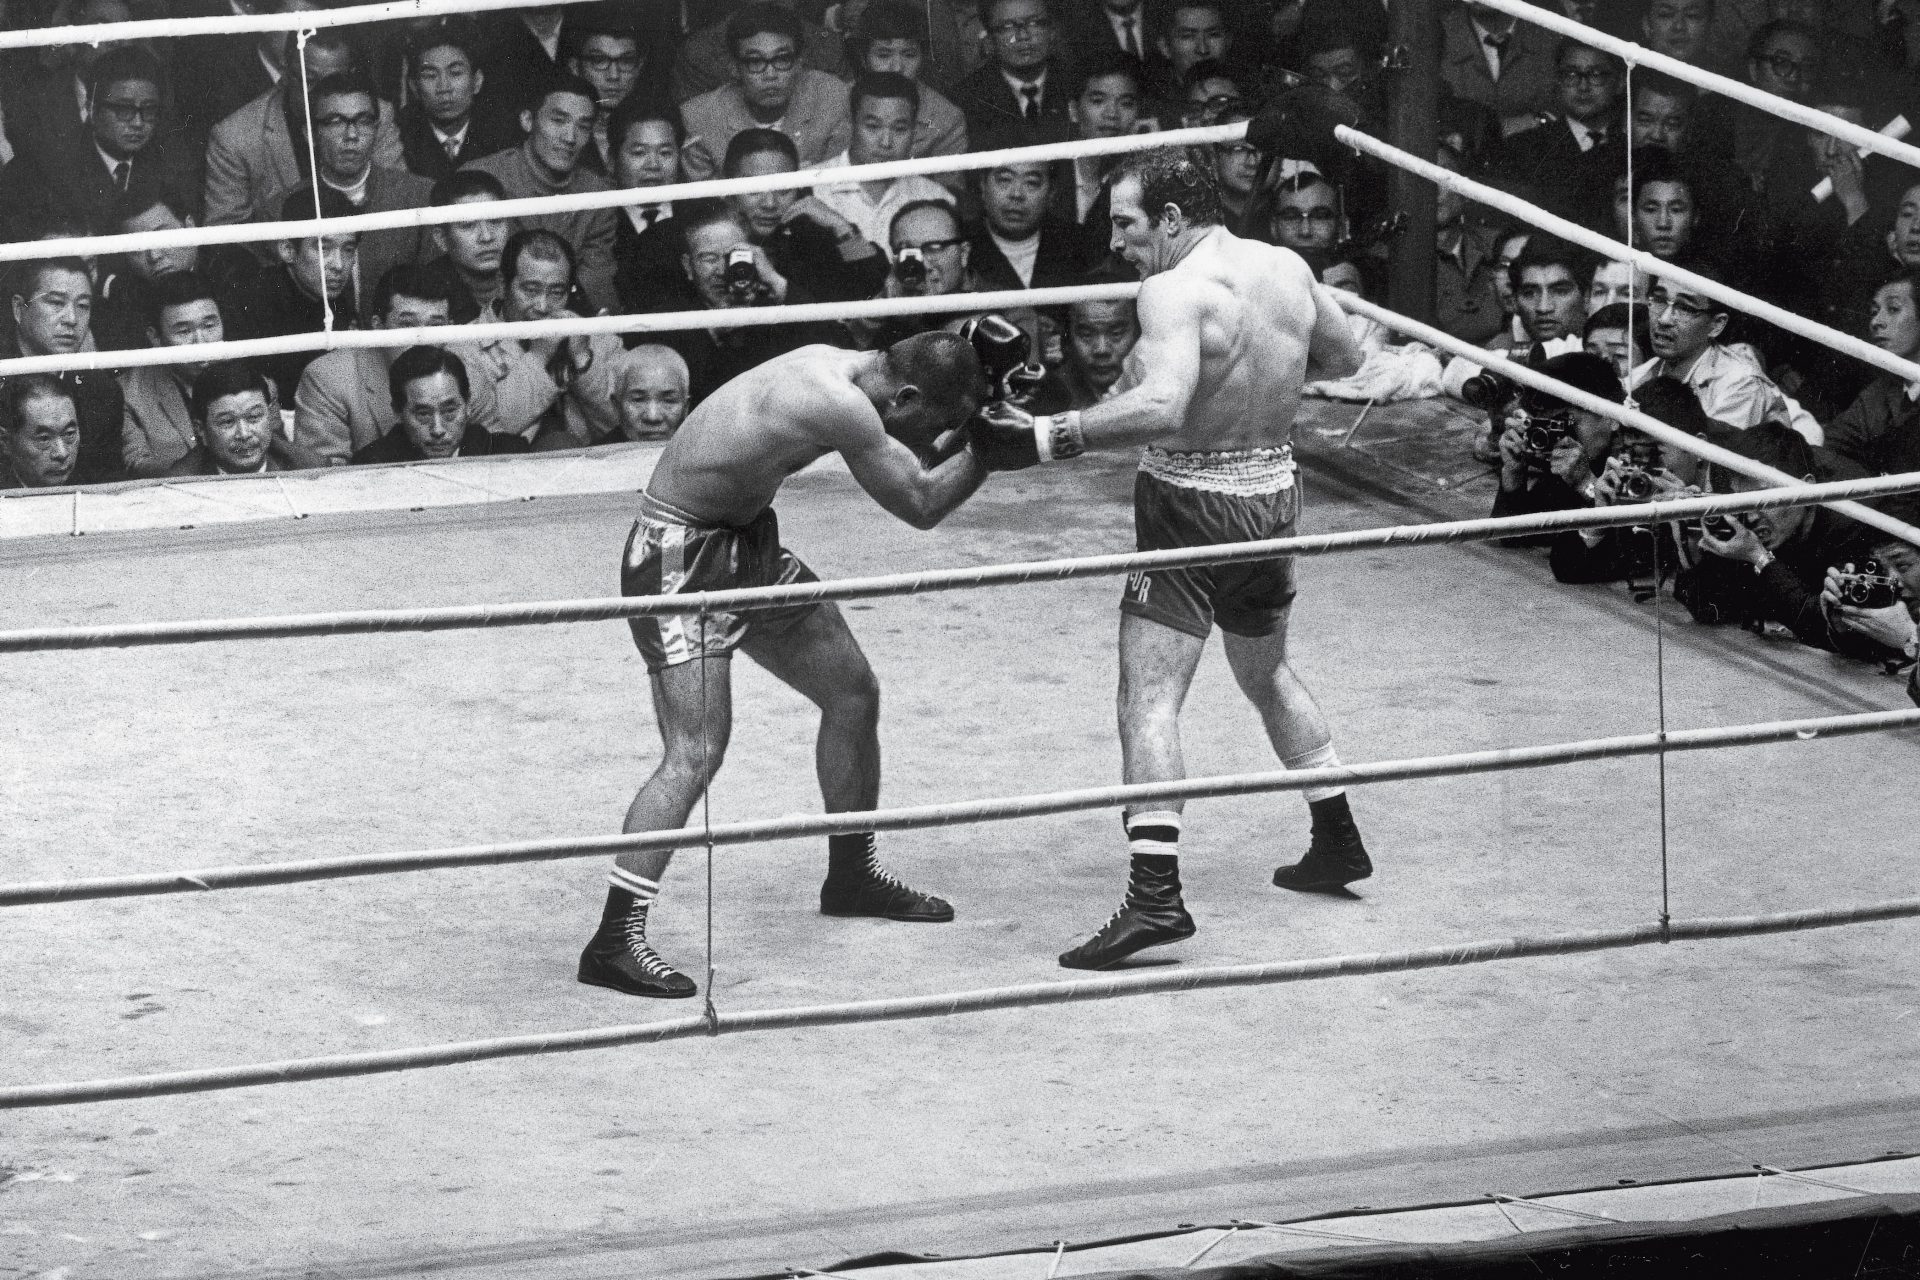 The anti-boxer